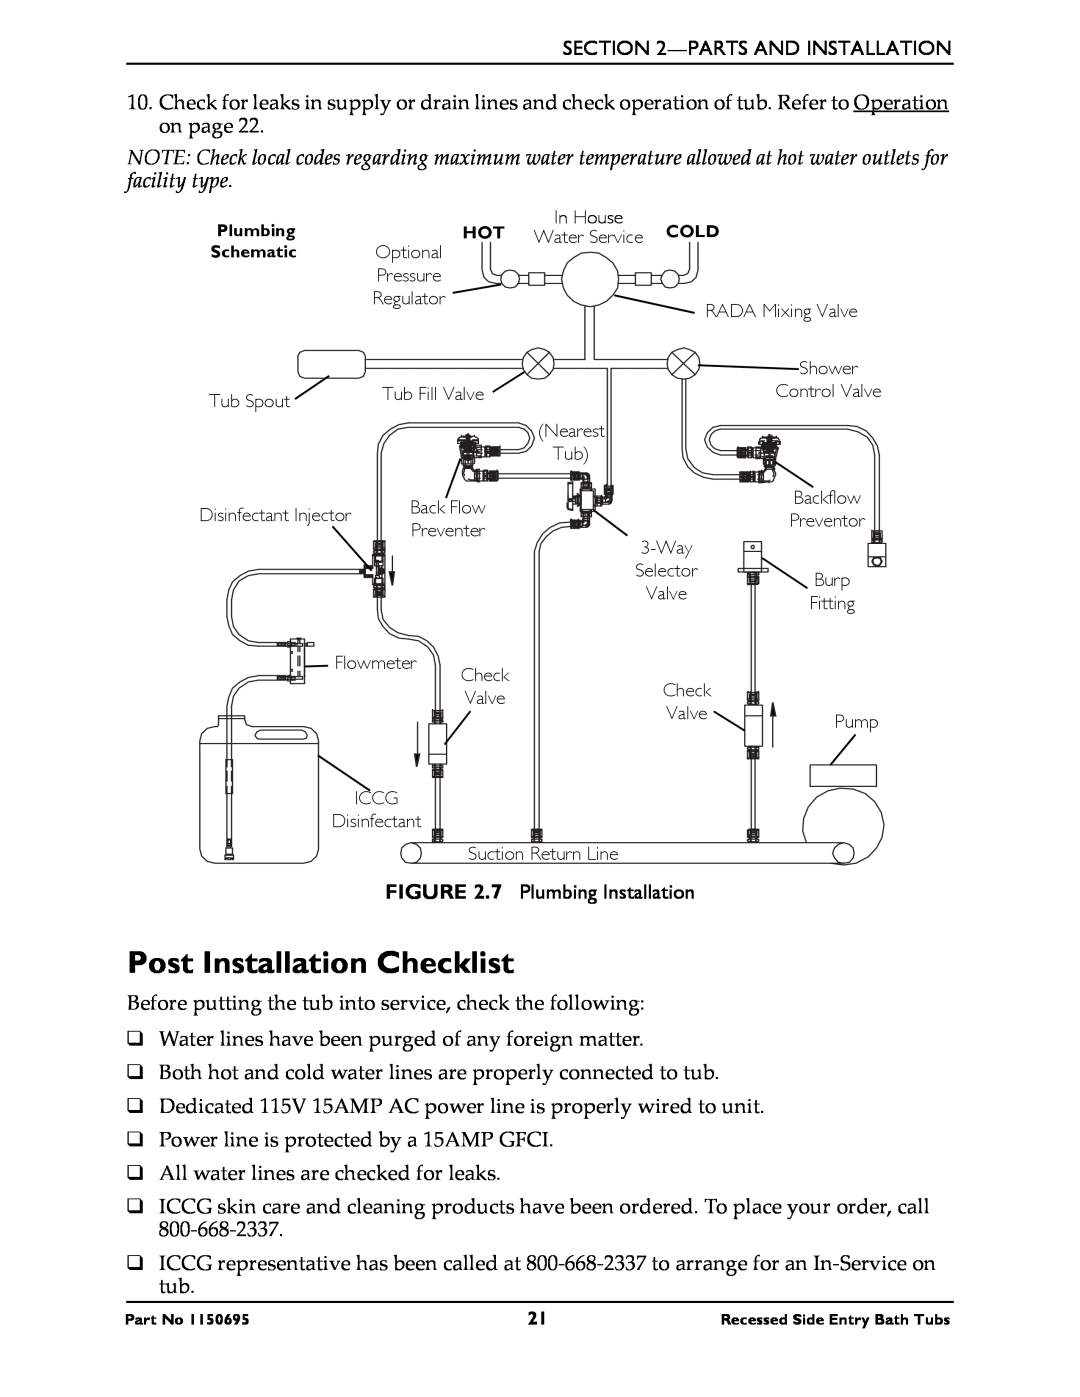 Invacare 3750, 3800 manual Post Installation Checklist 